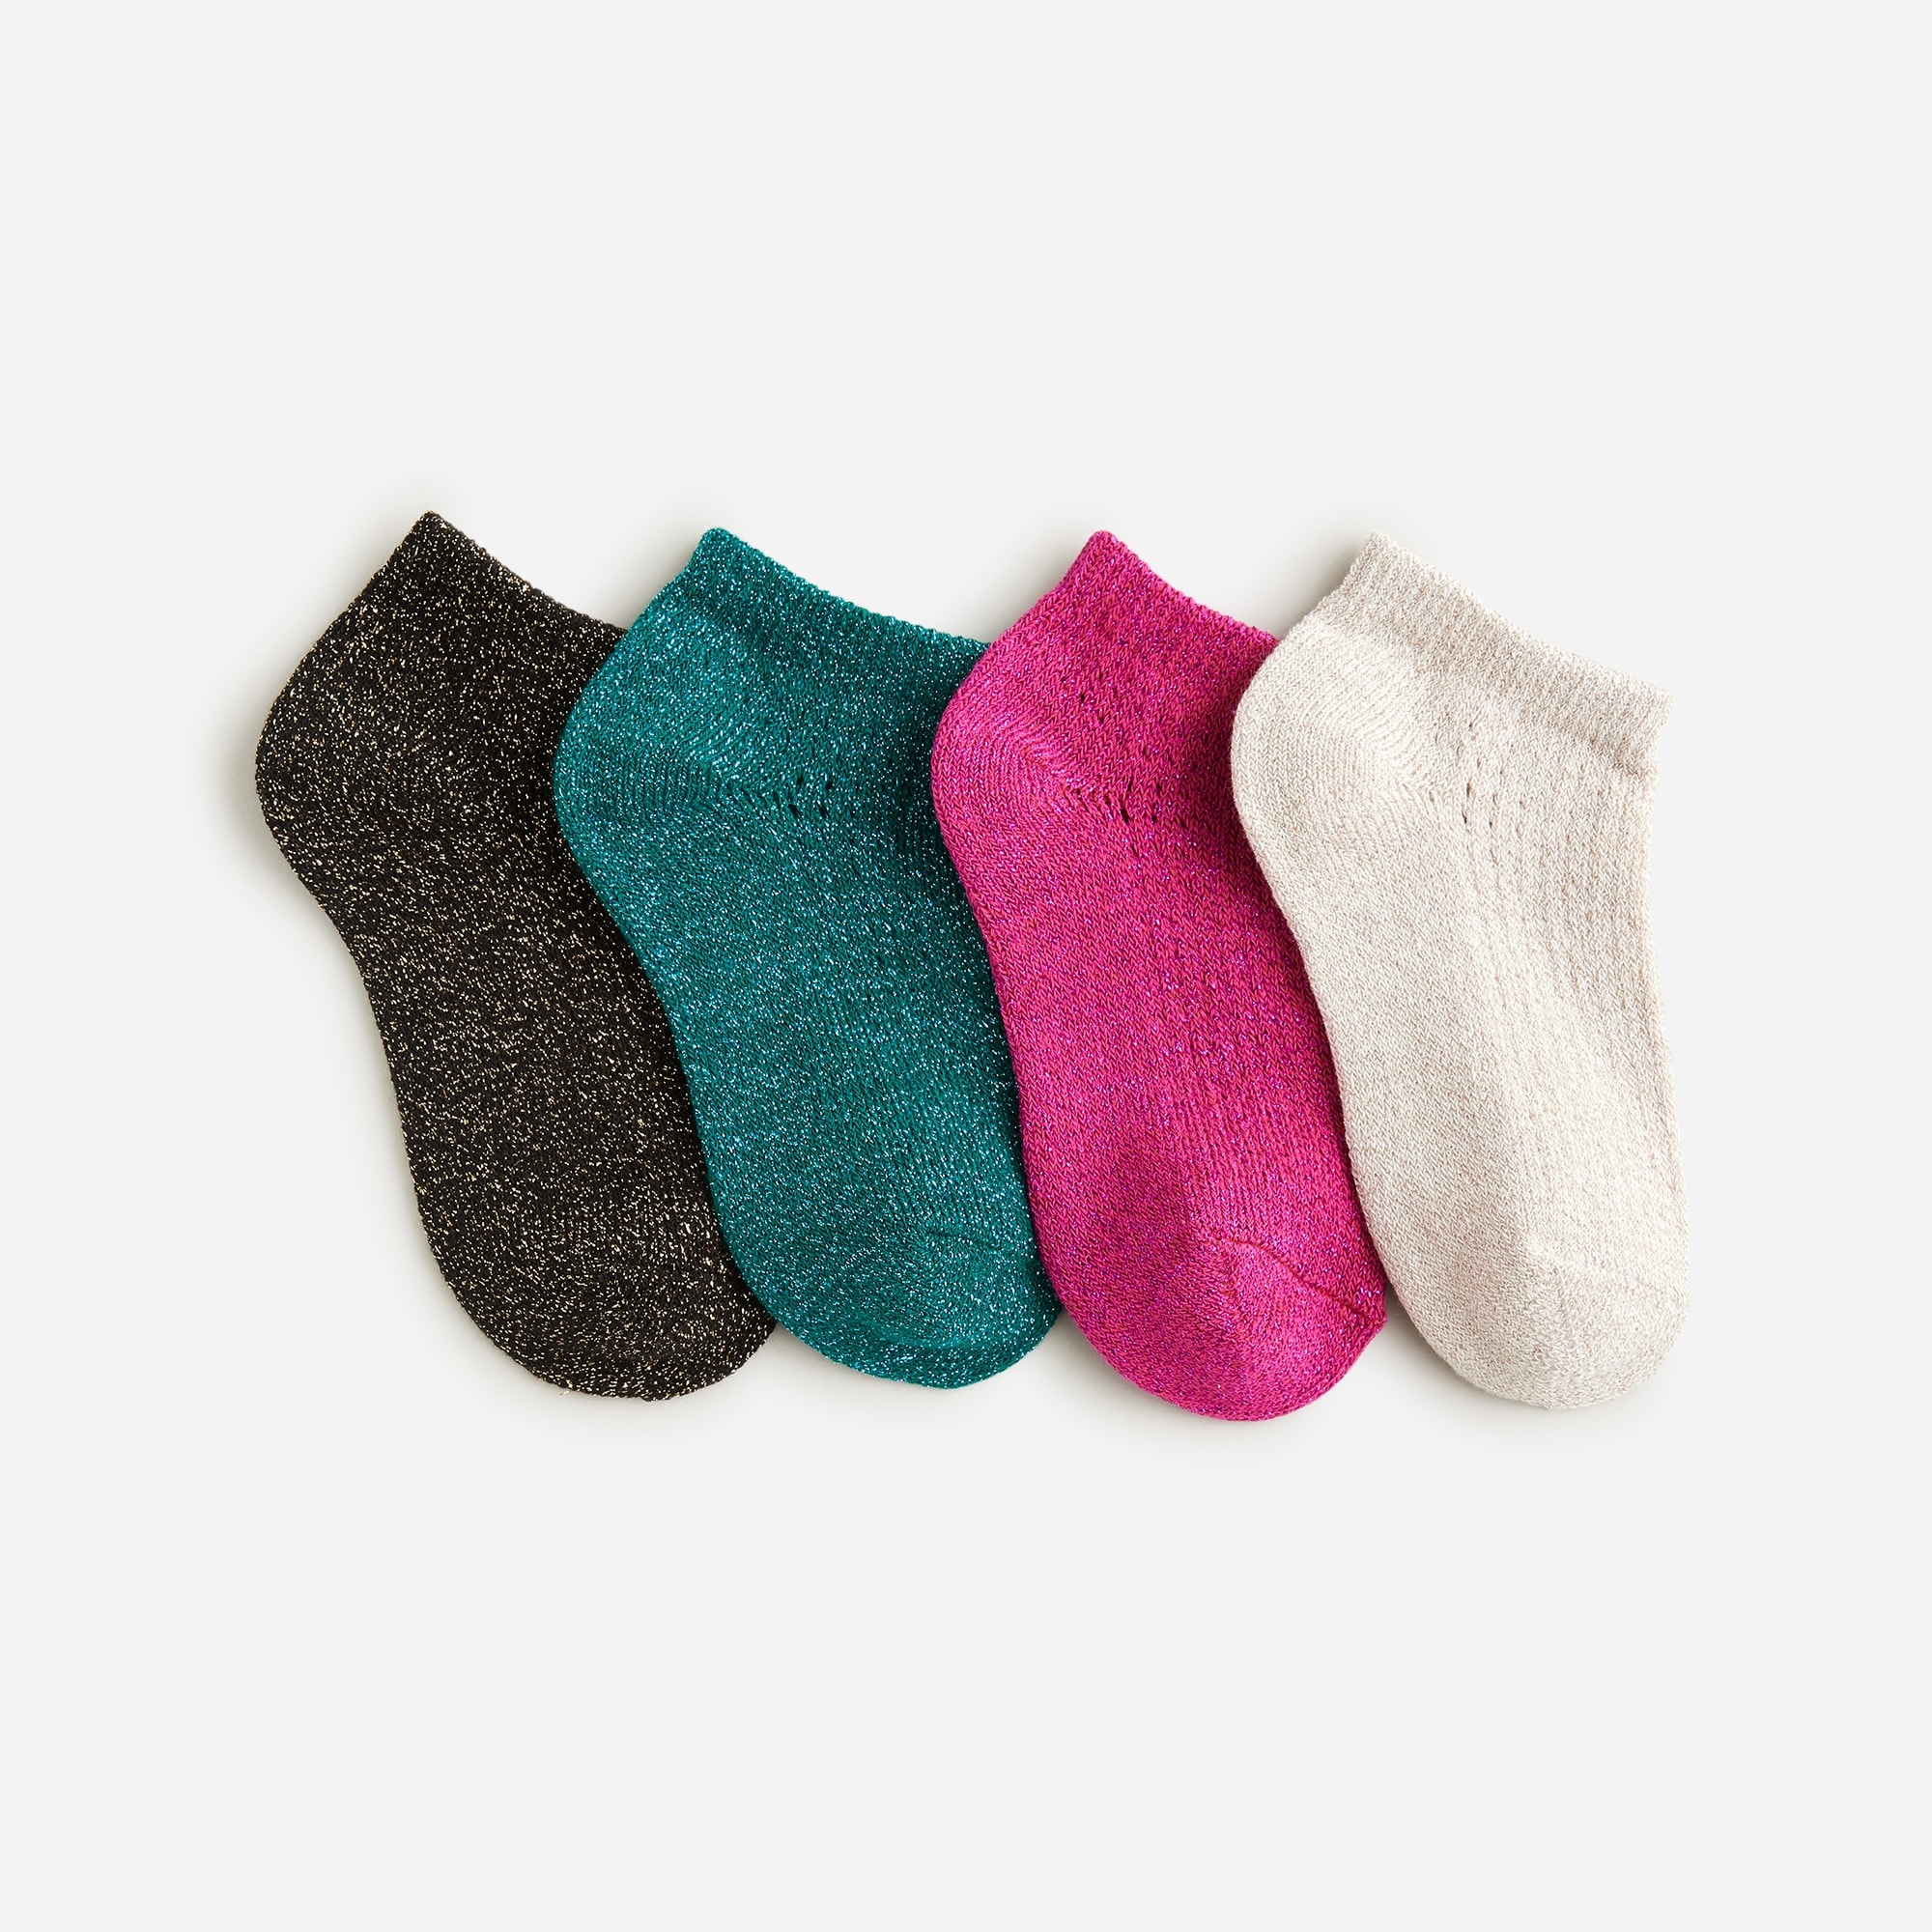  Girls' metallic ankle socks four-pack